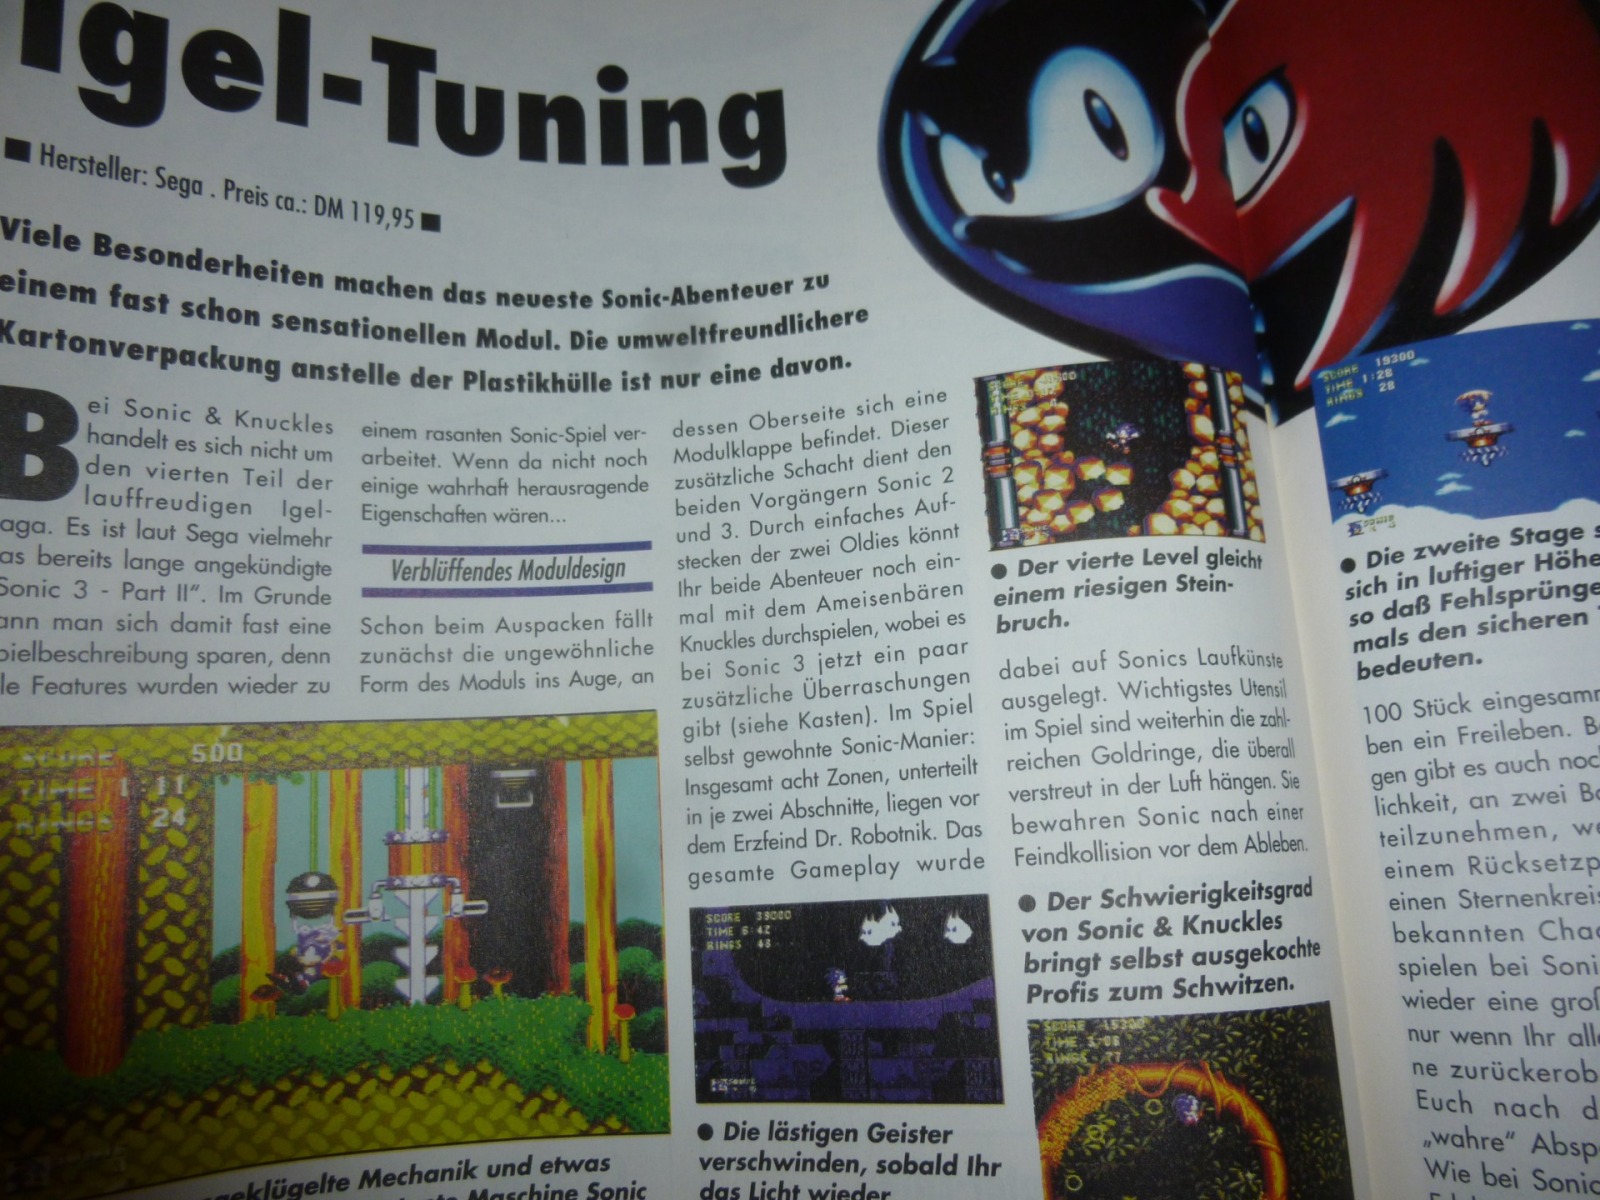 Play Time - Das Computer- und Videospiele-Magazin - Ausgabe 12/94 1994 19